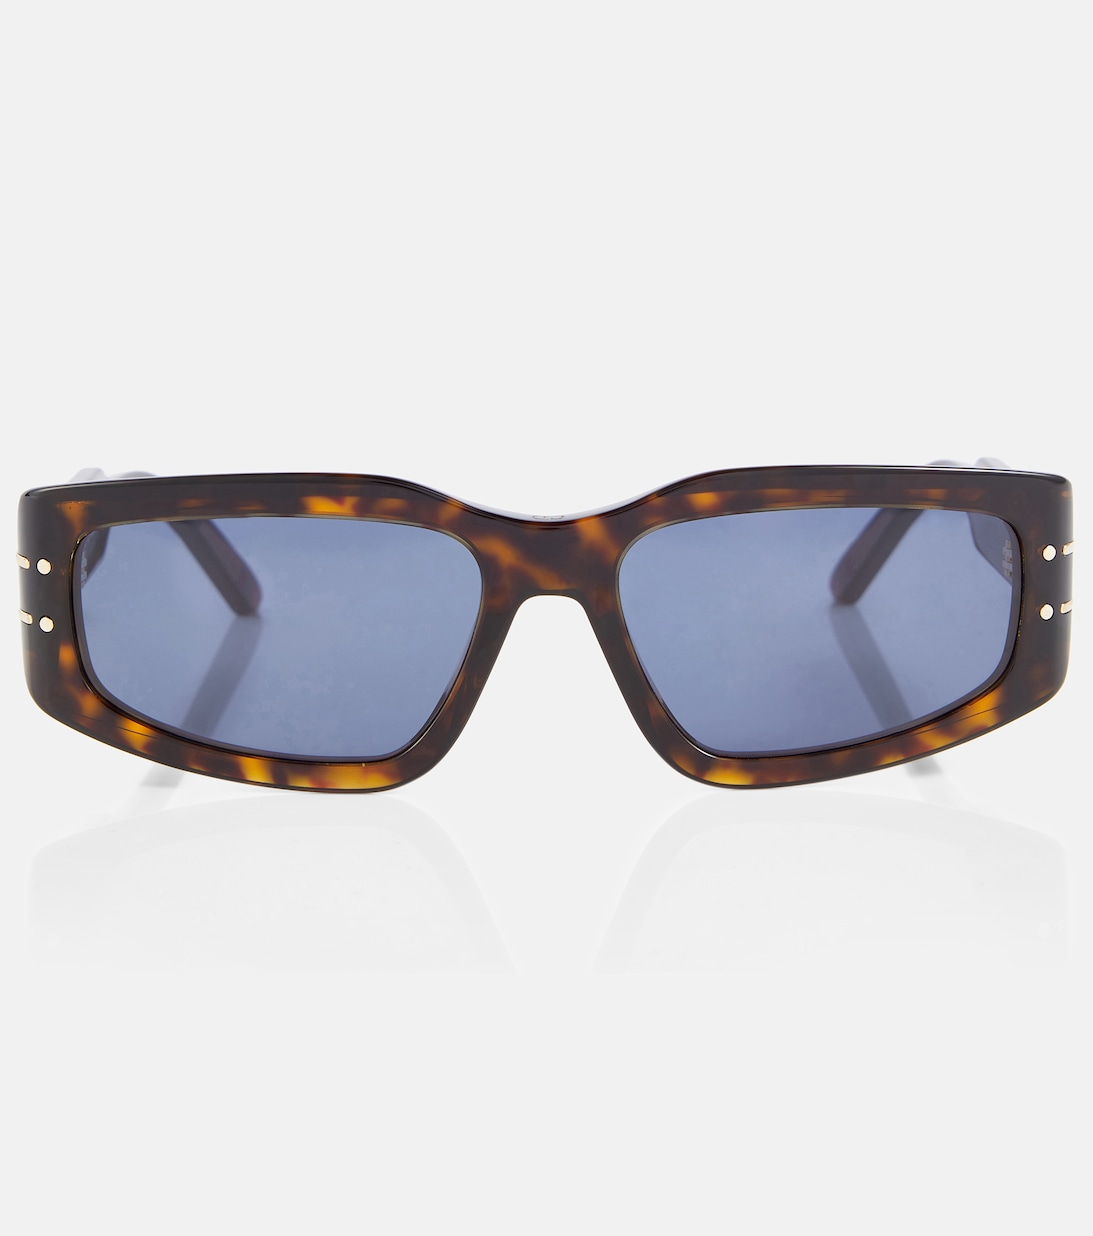 Солнцезащитные очки DiorSignature S9U прямоугольной формы Dior Eyewear, синий